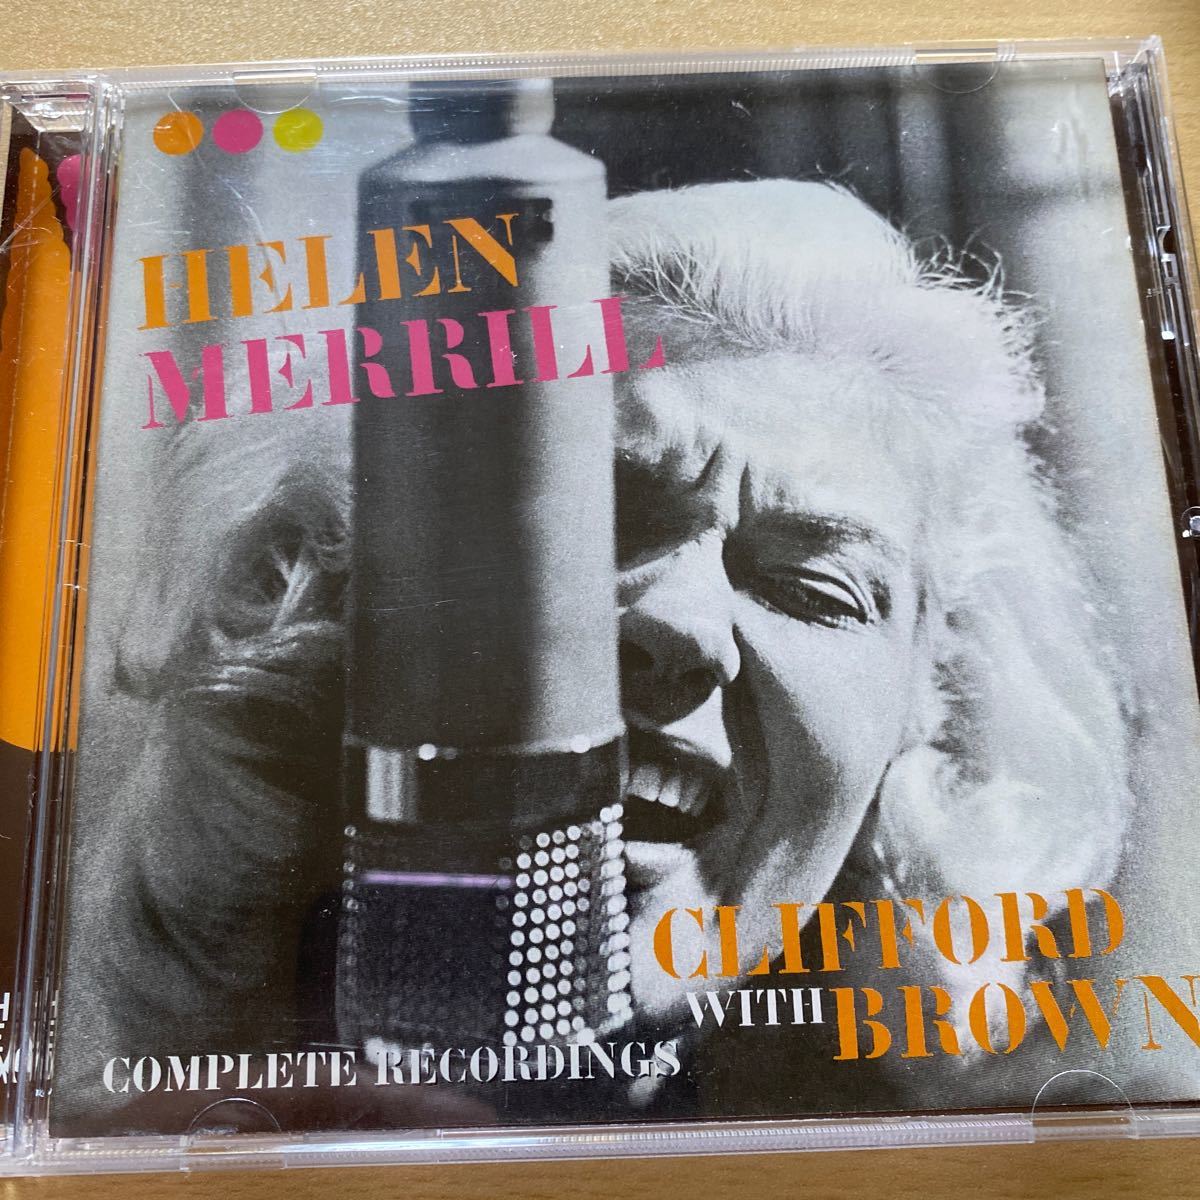 ヘレンメリル HELEN MERRILL Complete Recordings (2in1)_画像1